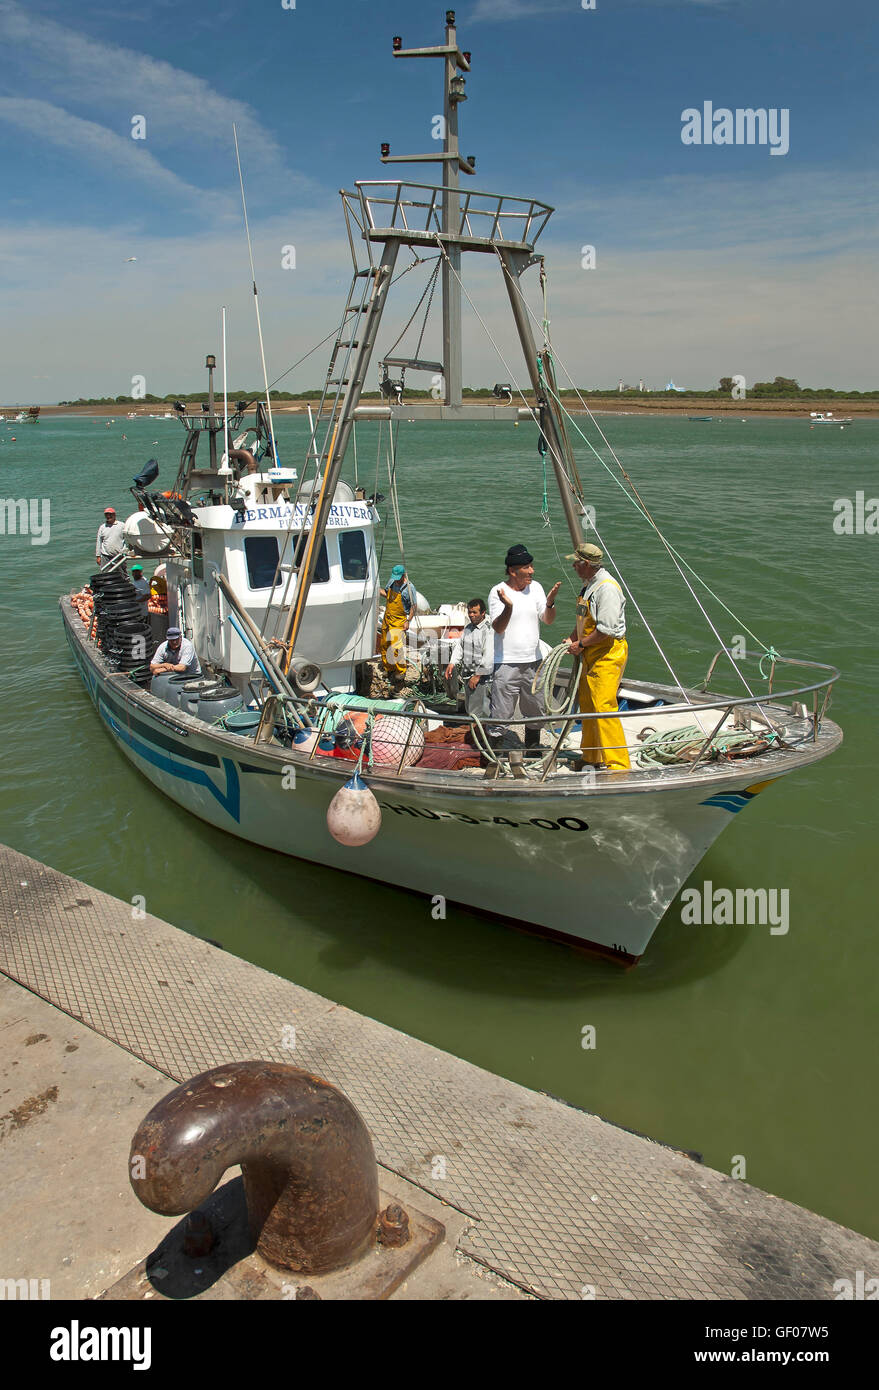 Port de pêche, Punta Umbría, Huelva province, région d'Andalousie, Espagne, Europe Banque D'Images